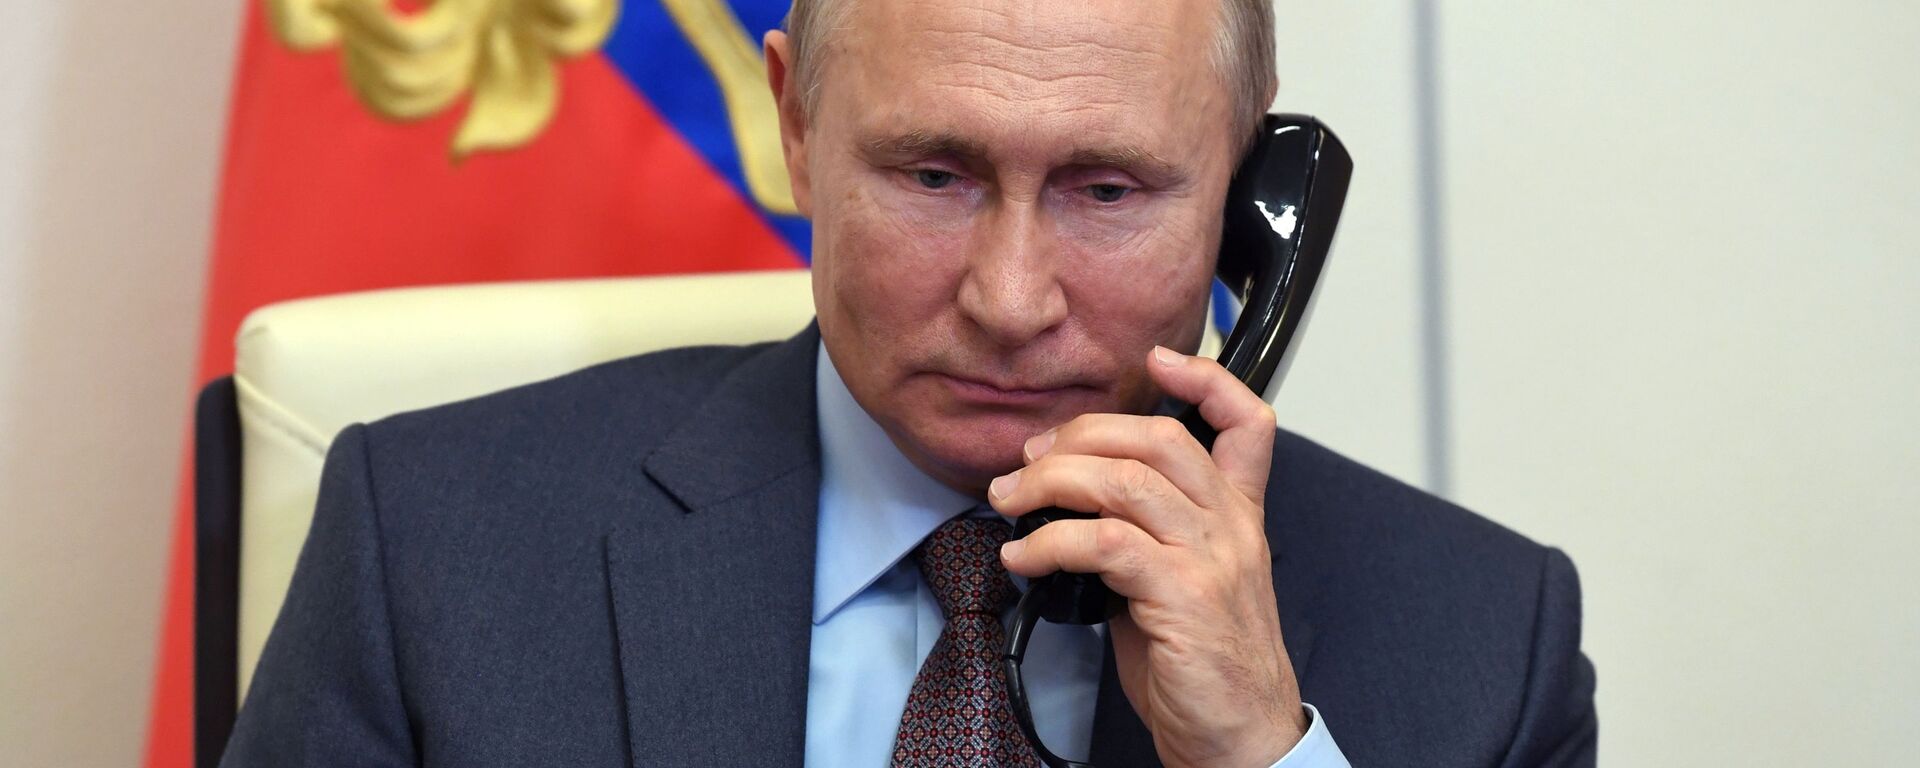 Президент России Владимир Путин разговаривает по телефону - Sputnik Беларусь, 1920, 26.04.2021